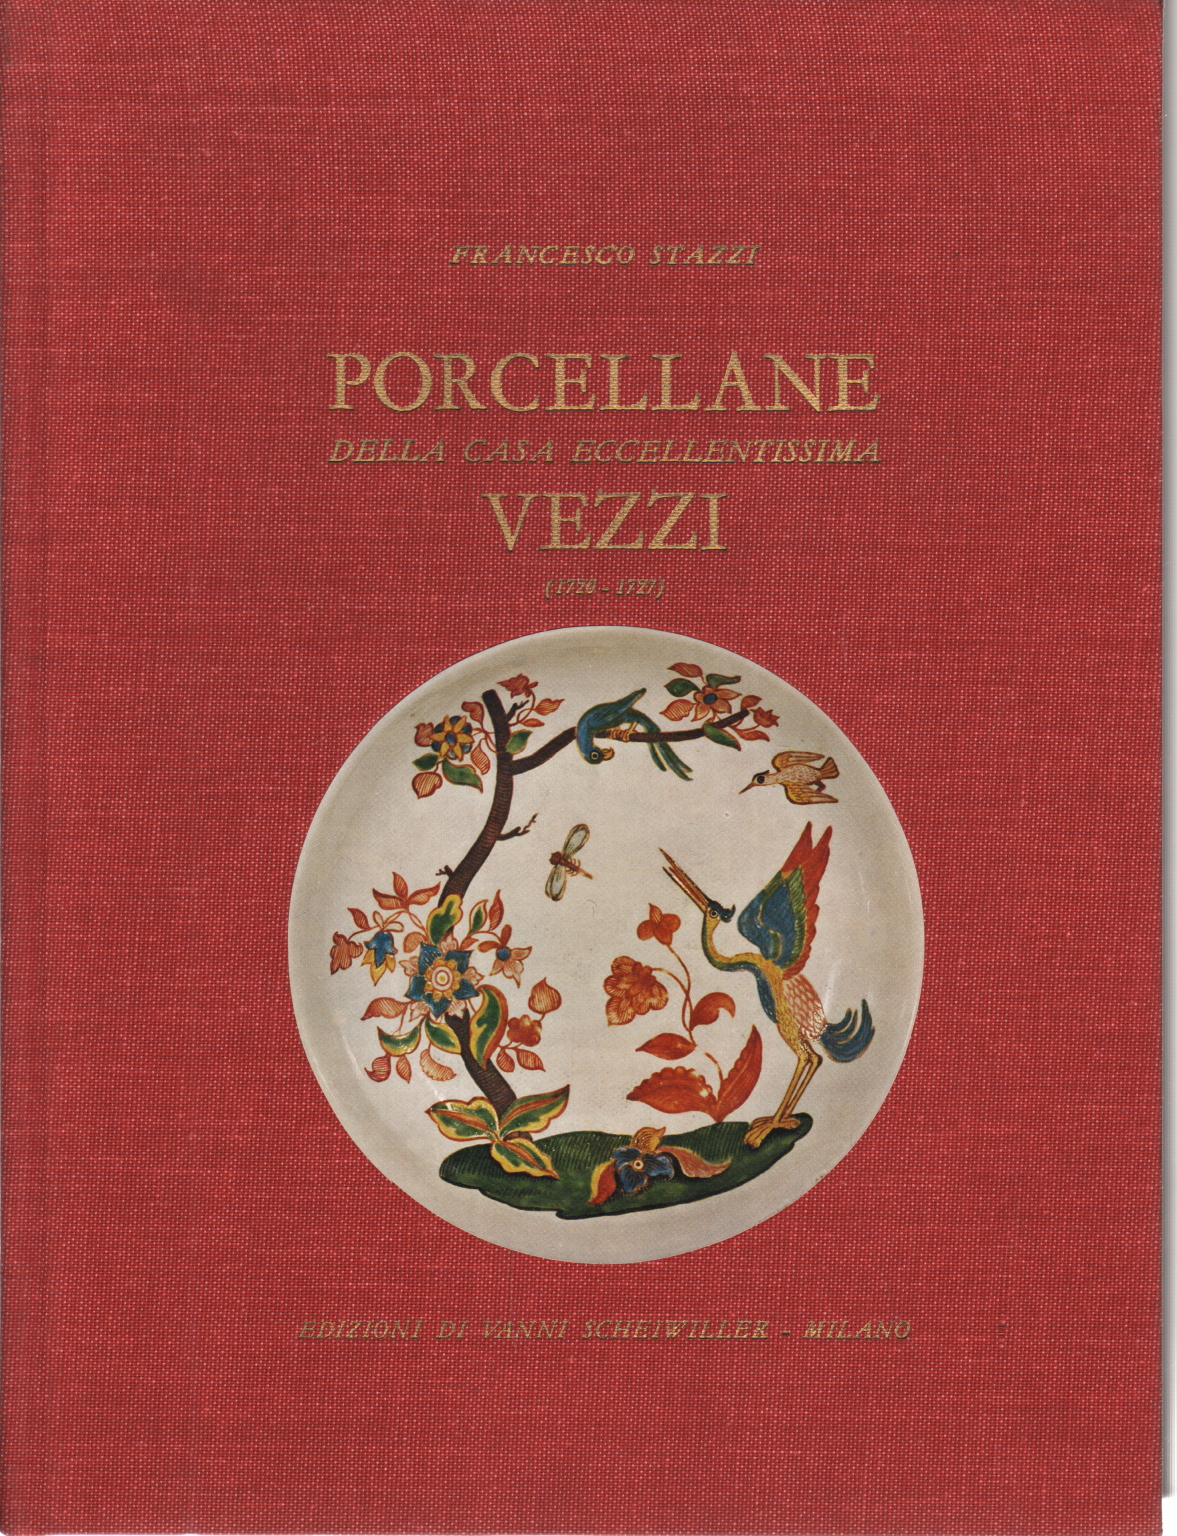 Porzellan-haus eccellentissima Vezzi (1720-Francesco Stazzi